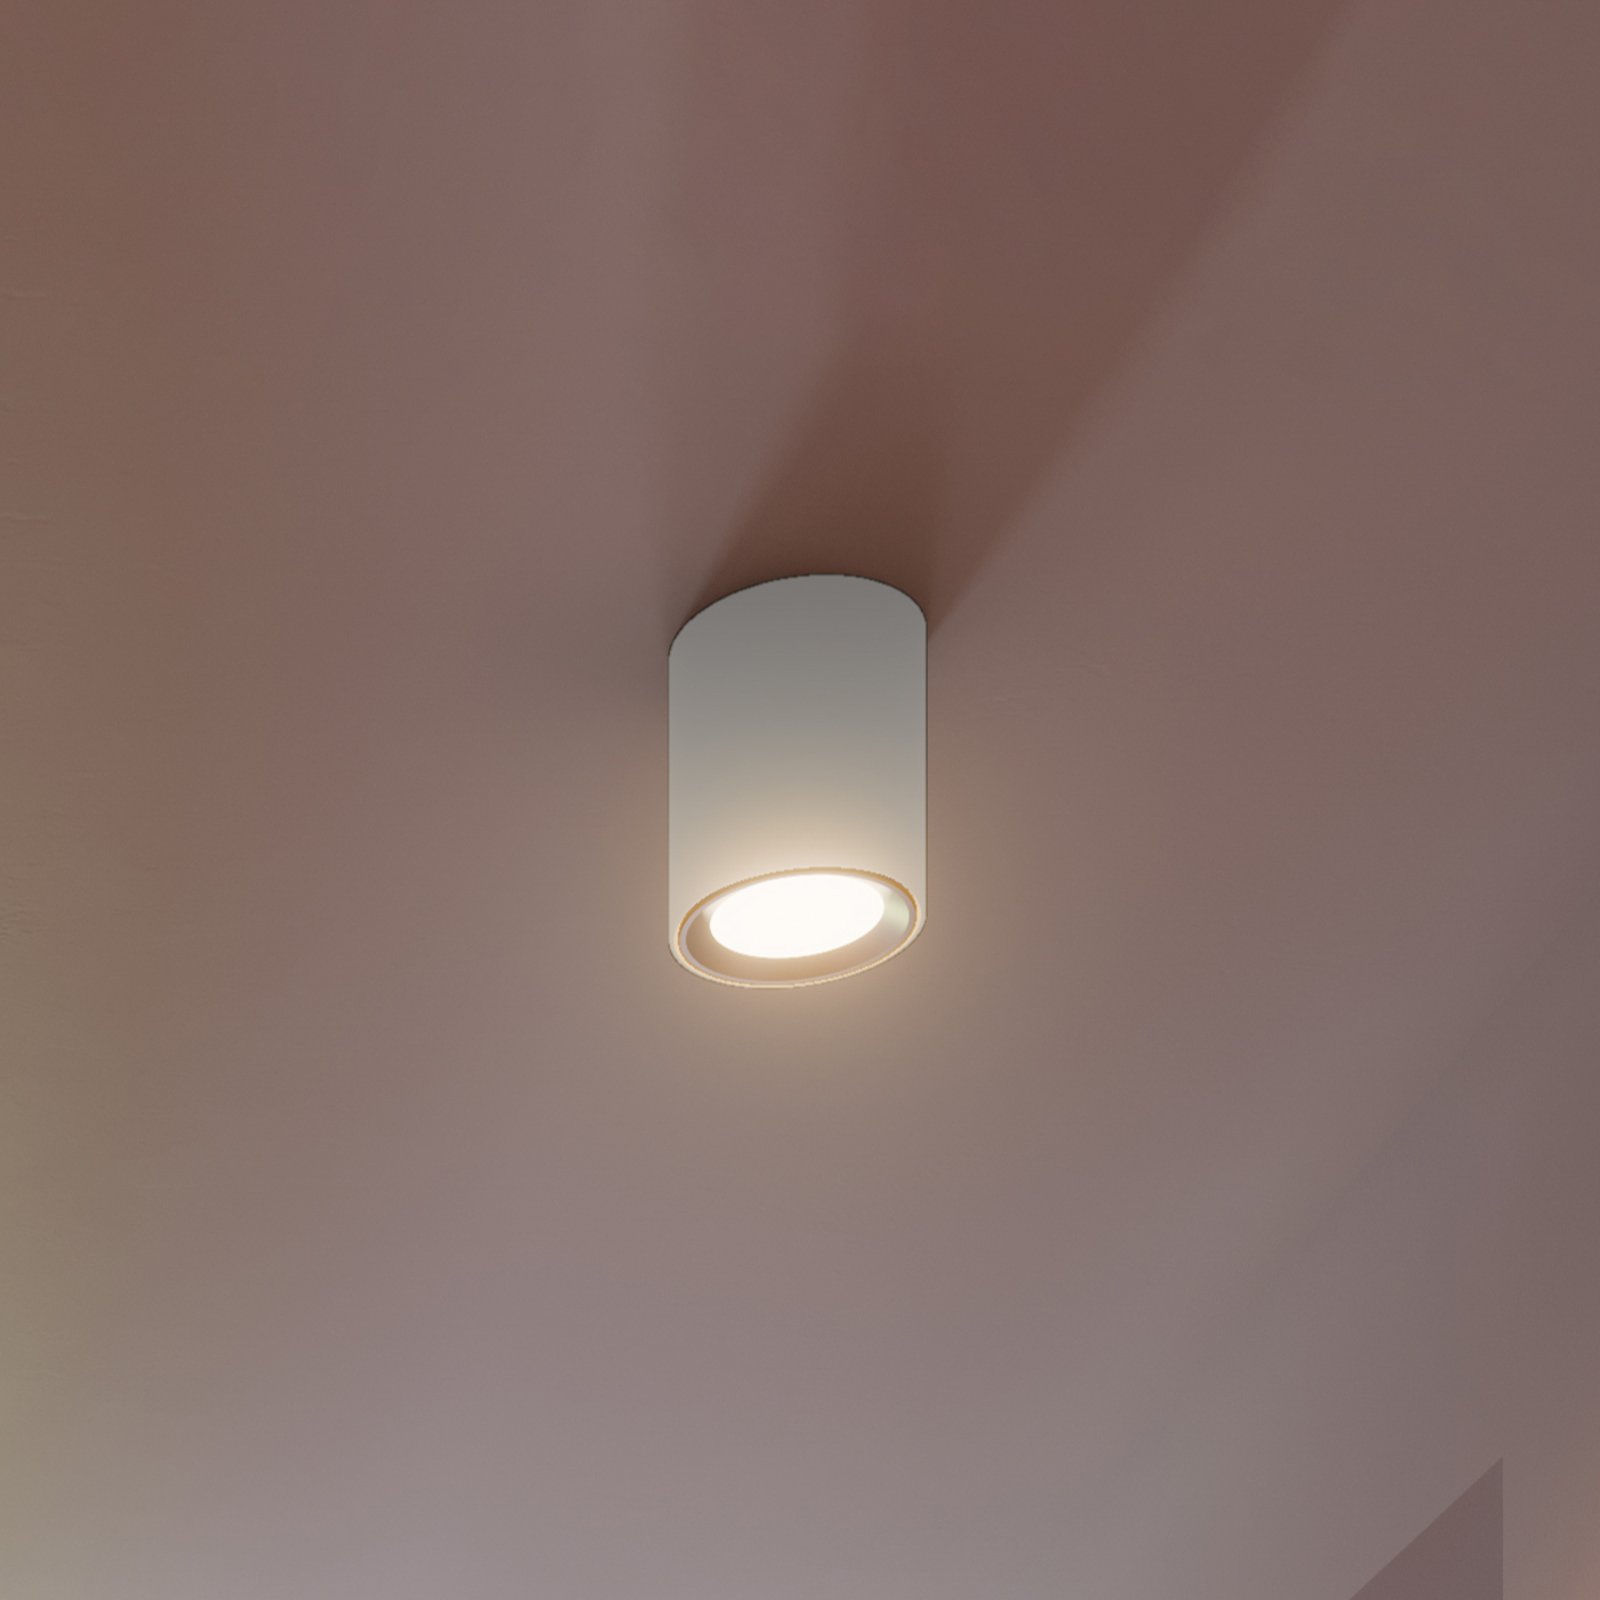 Spot sufitowy LED Landon Smart, biały, 14 cm